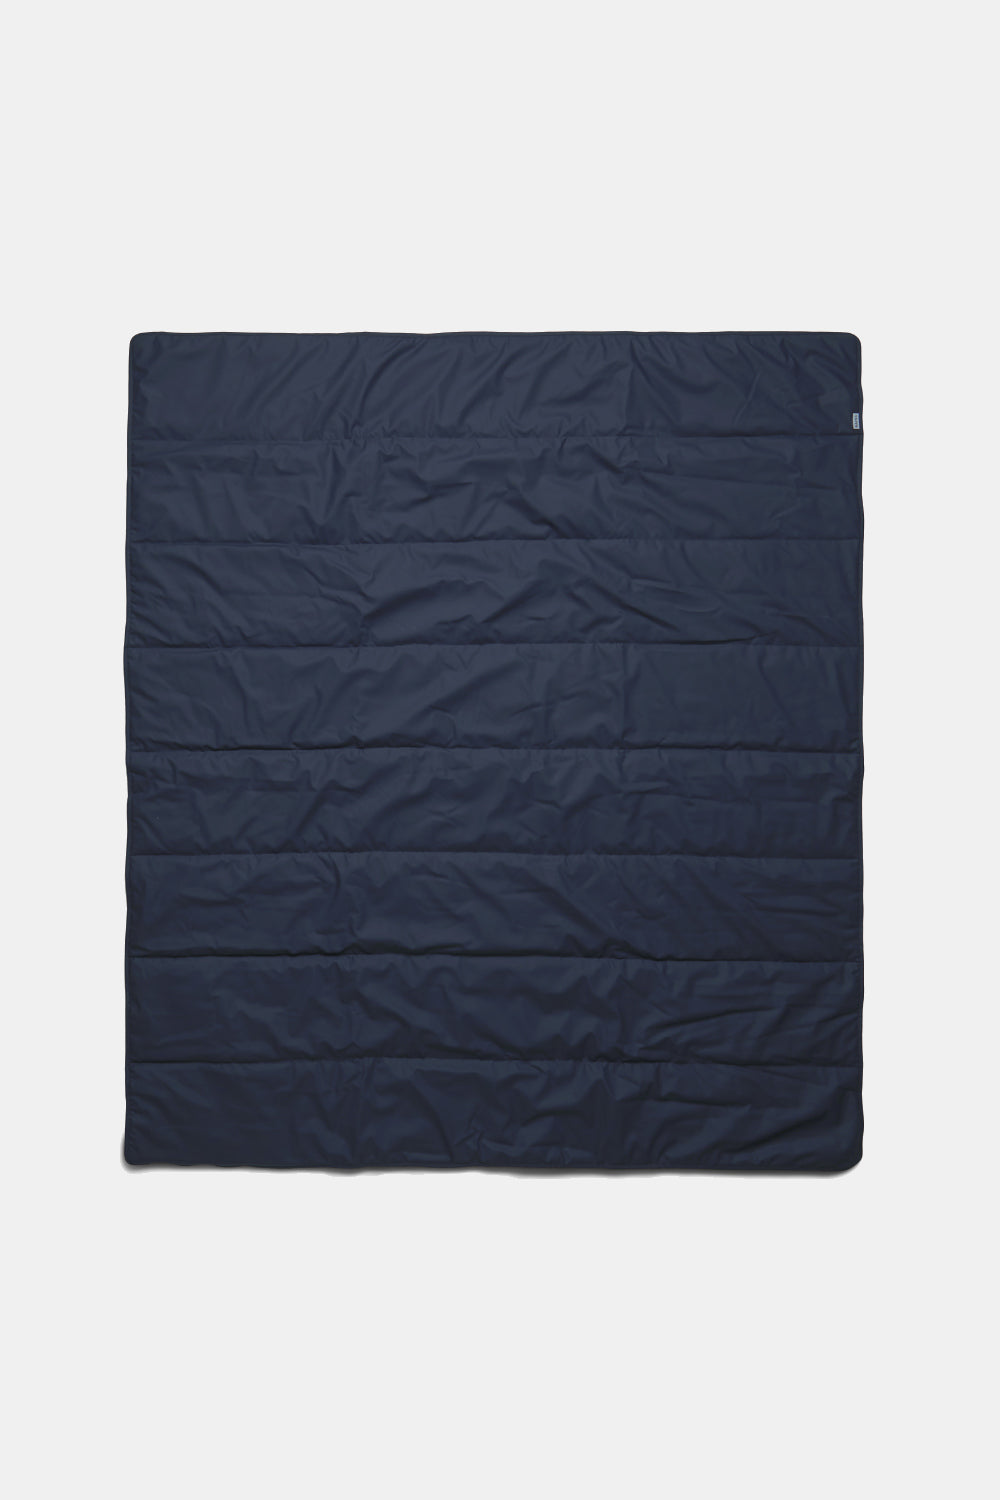 Rains Waterproof Quilted Packable Blanket (Navy)